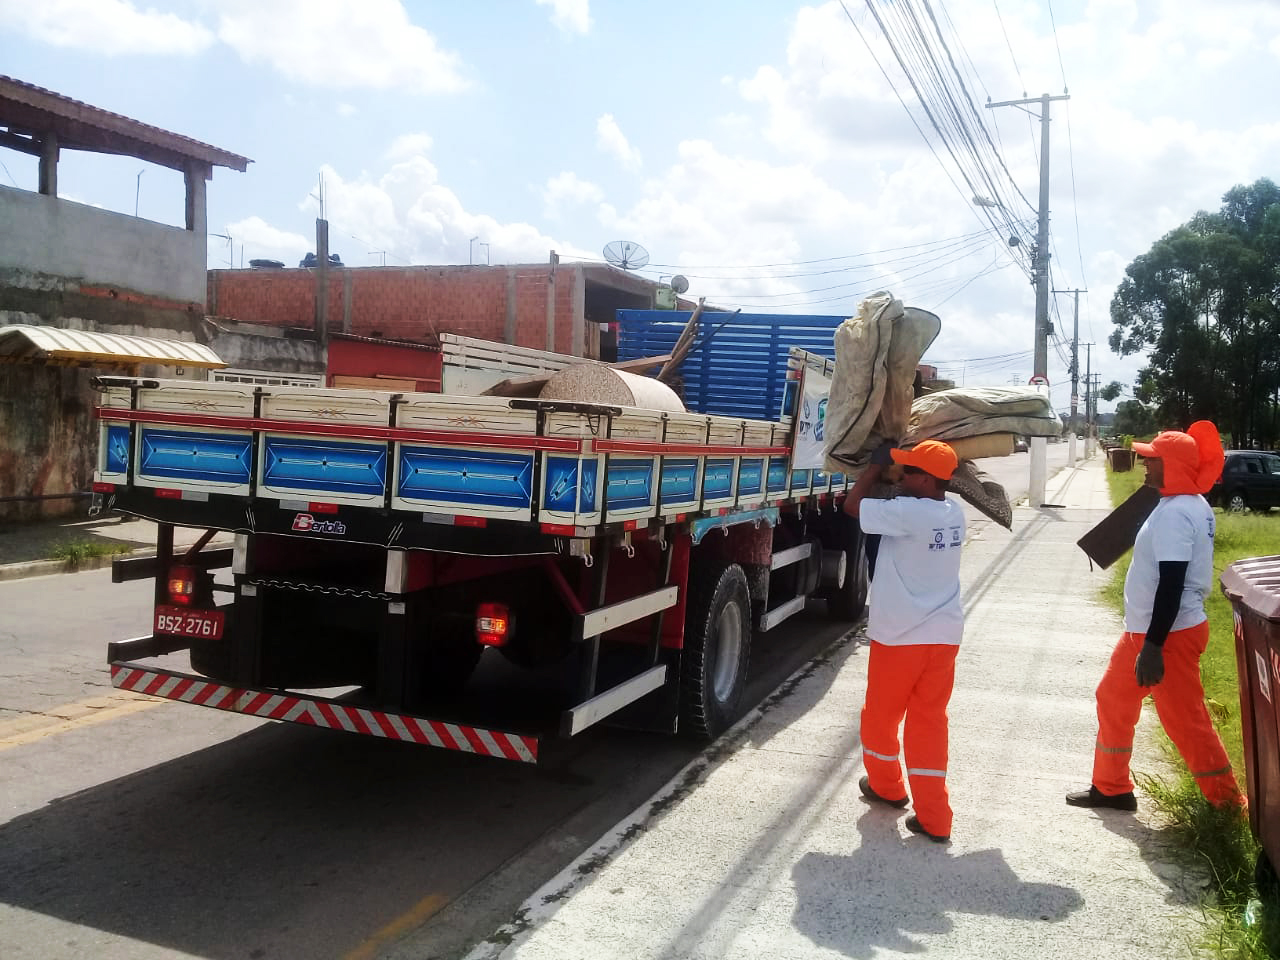 Cidade Limpa percorreu nesta segunda (16) oito locais de Jundiaí para recolher materiais inservíveis